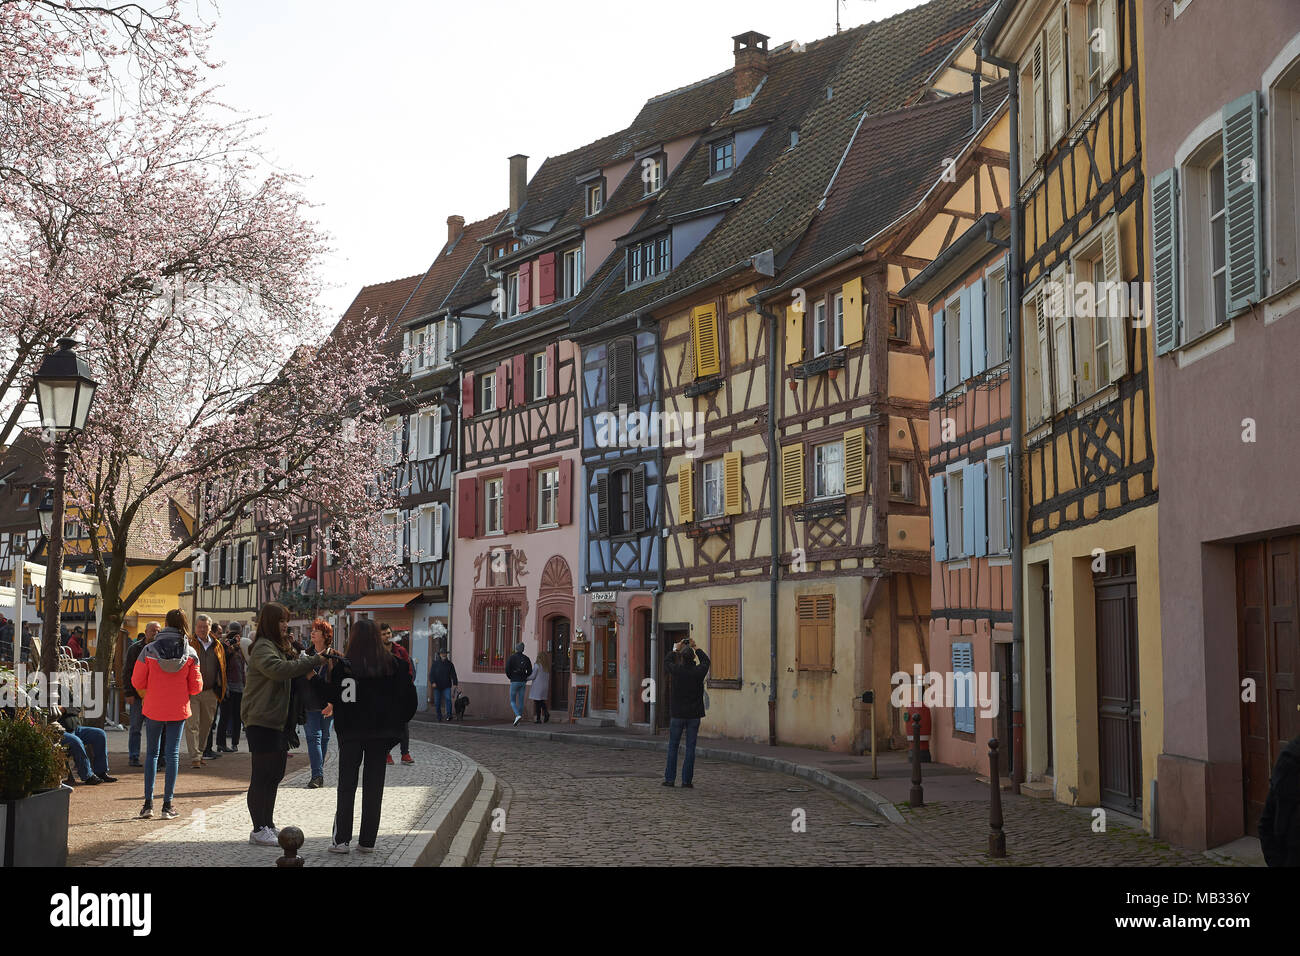 Maisons à colombages de la vieille ville, la Petite Venise, Colmar, Alsace, France Banque D'Images